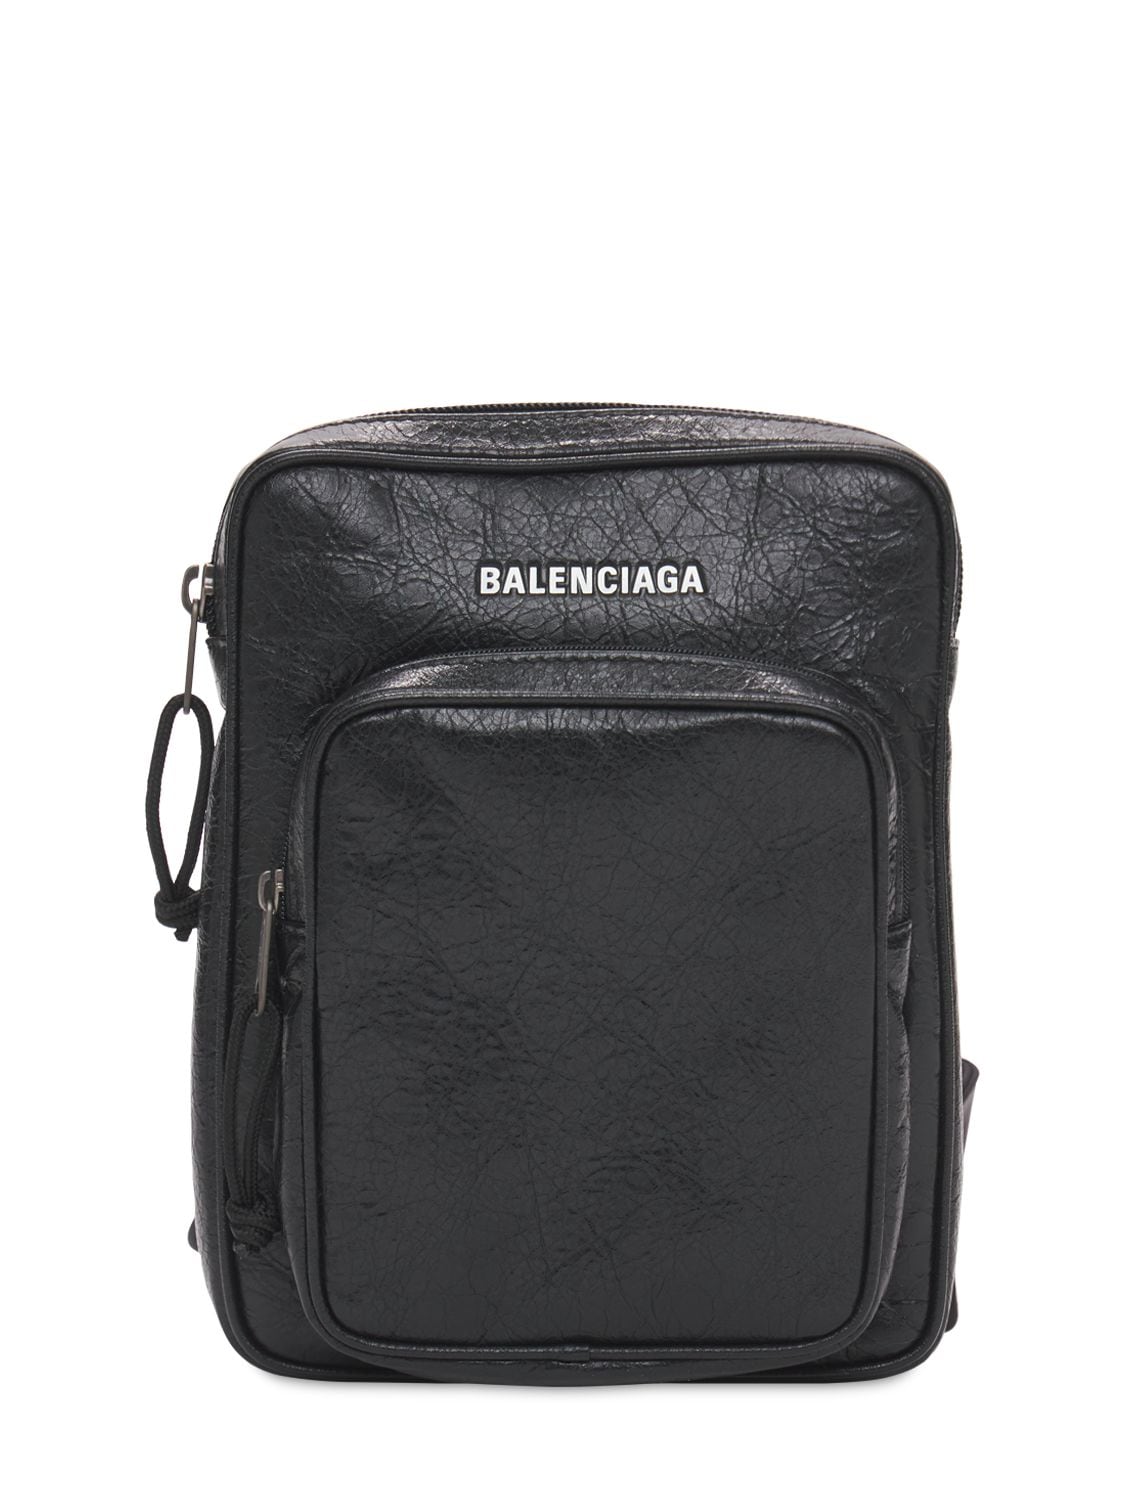 Balenciaga Logo皮革斜挎包 In Black